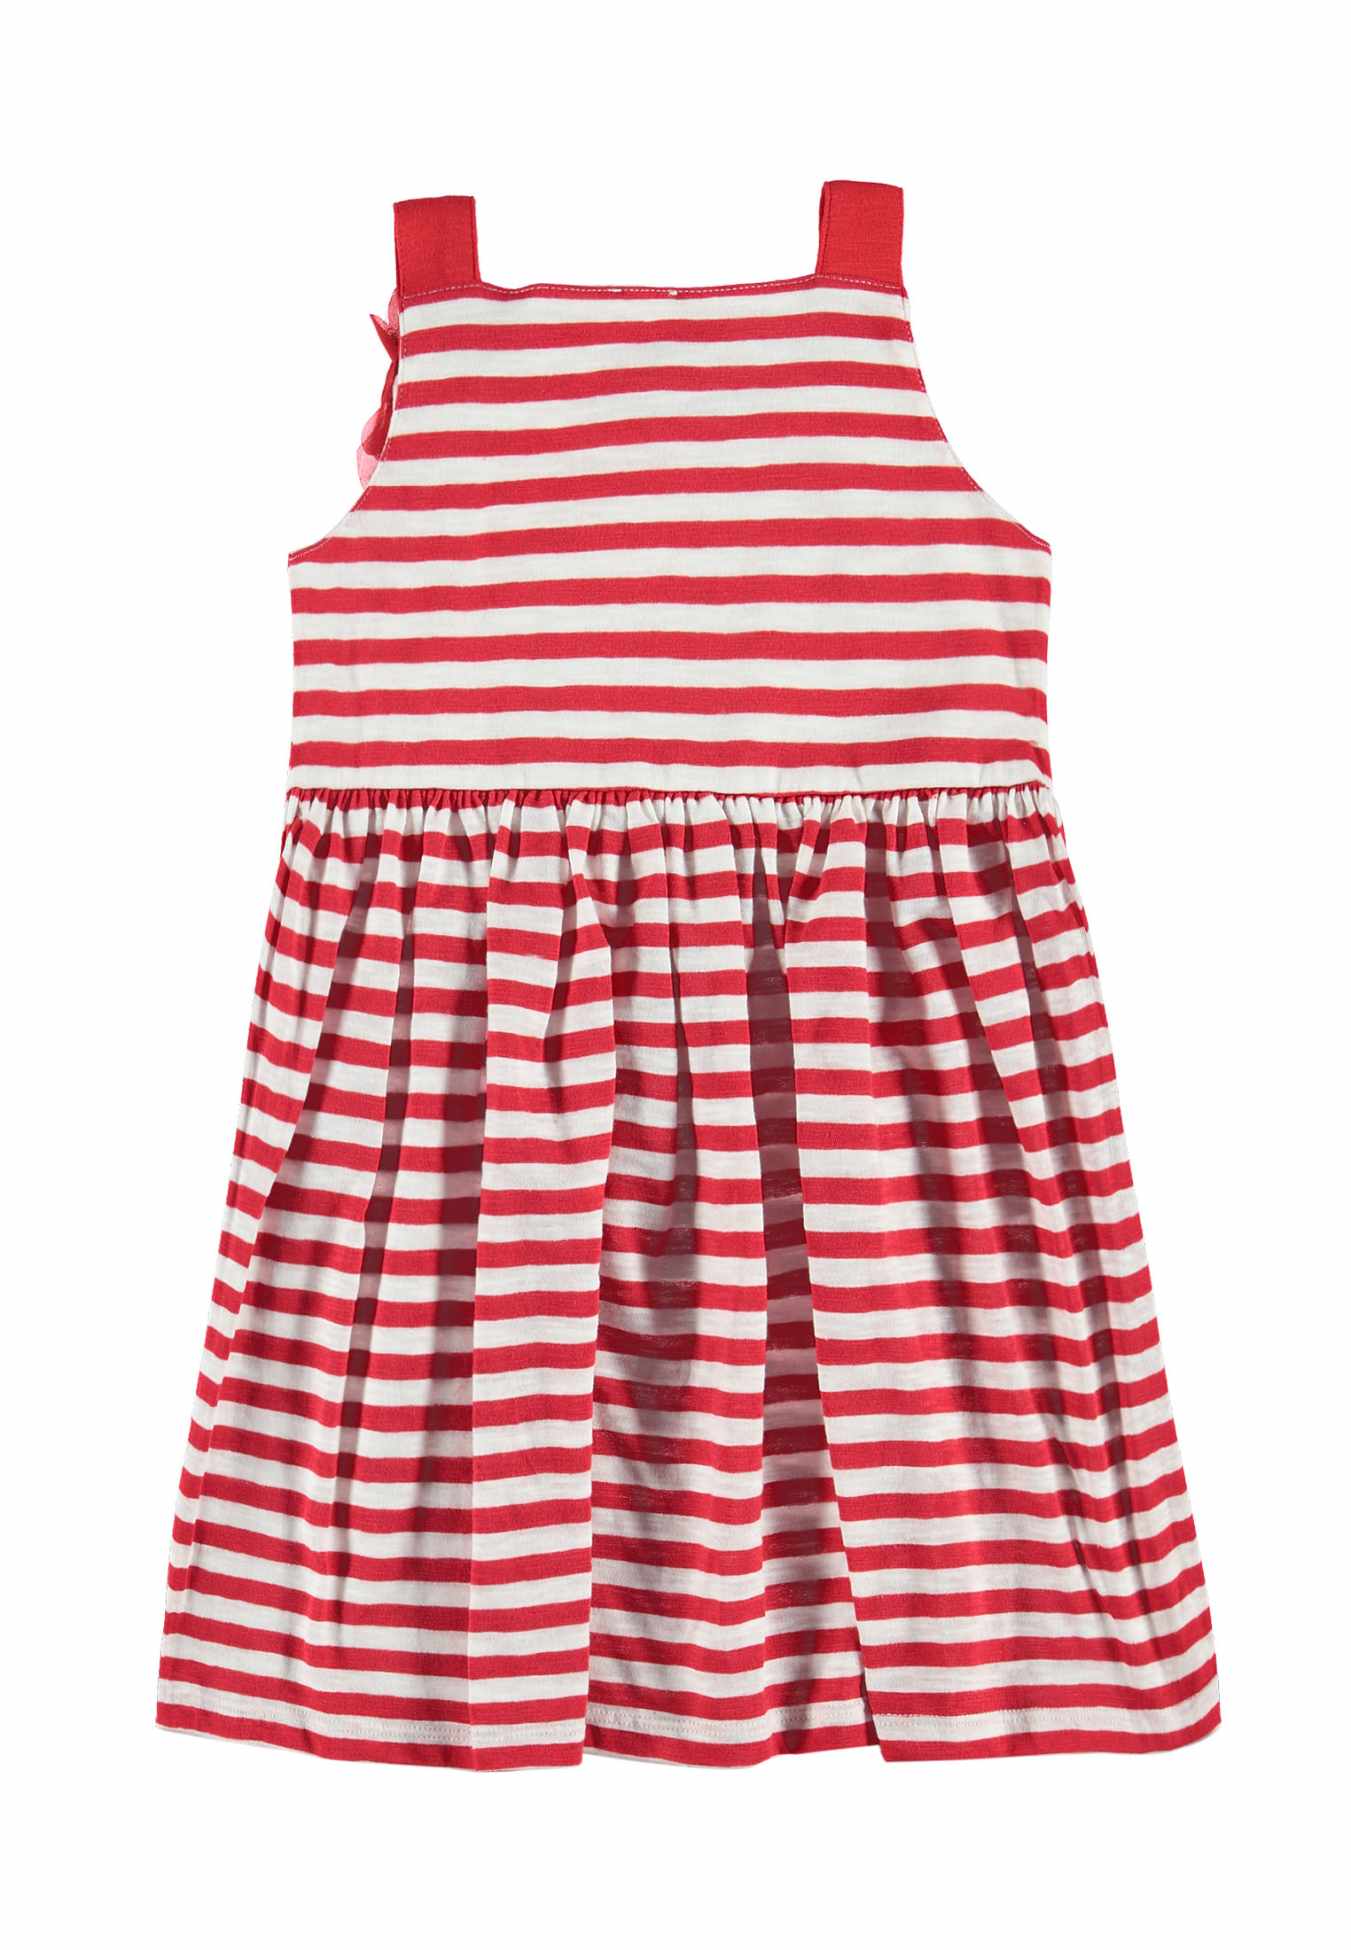 Sukienka dziewczęca bez rękawów, biało-czerwona, paski, Königsmuhle